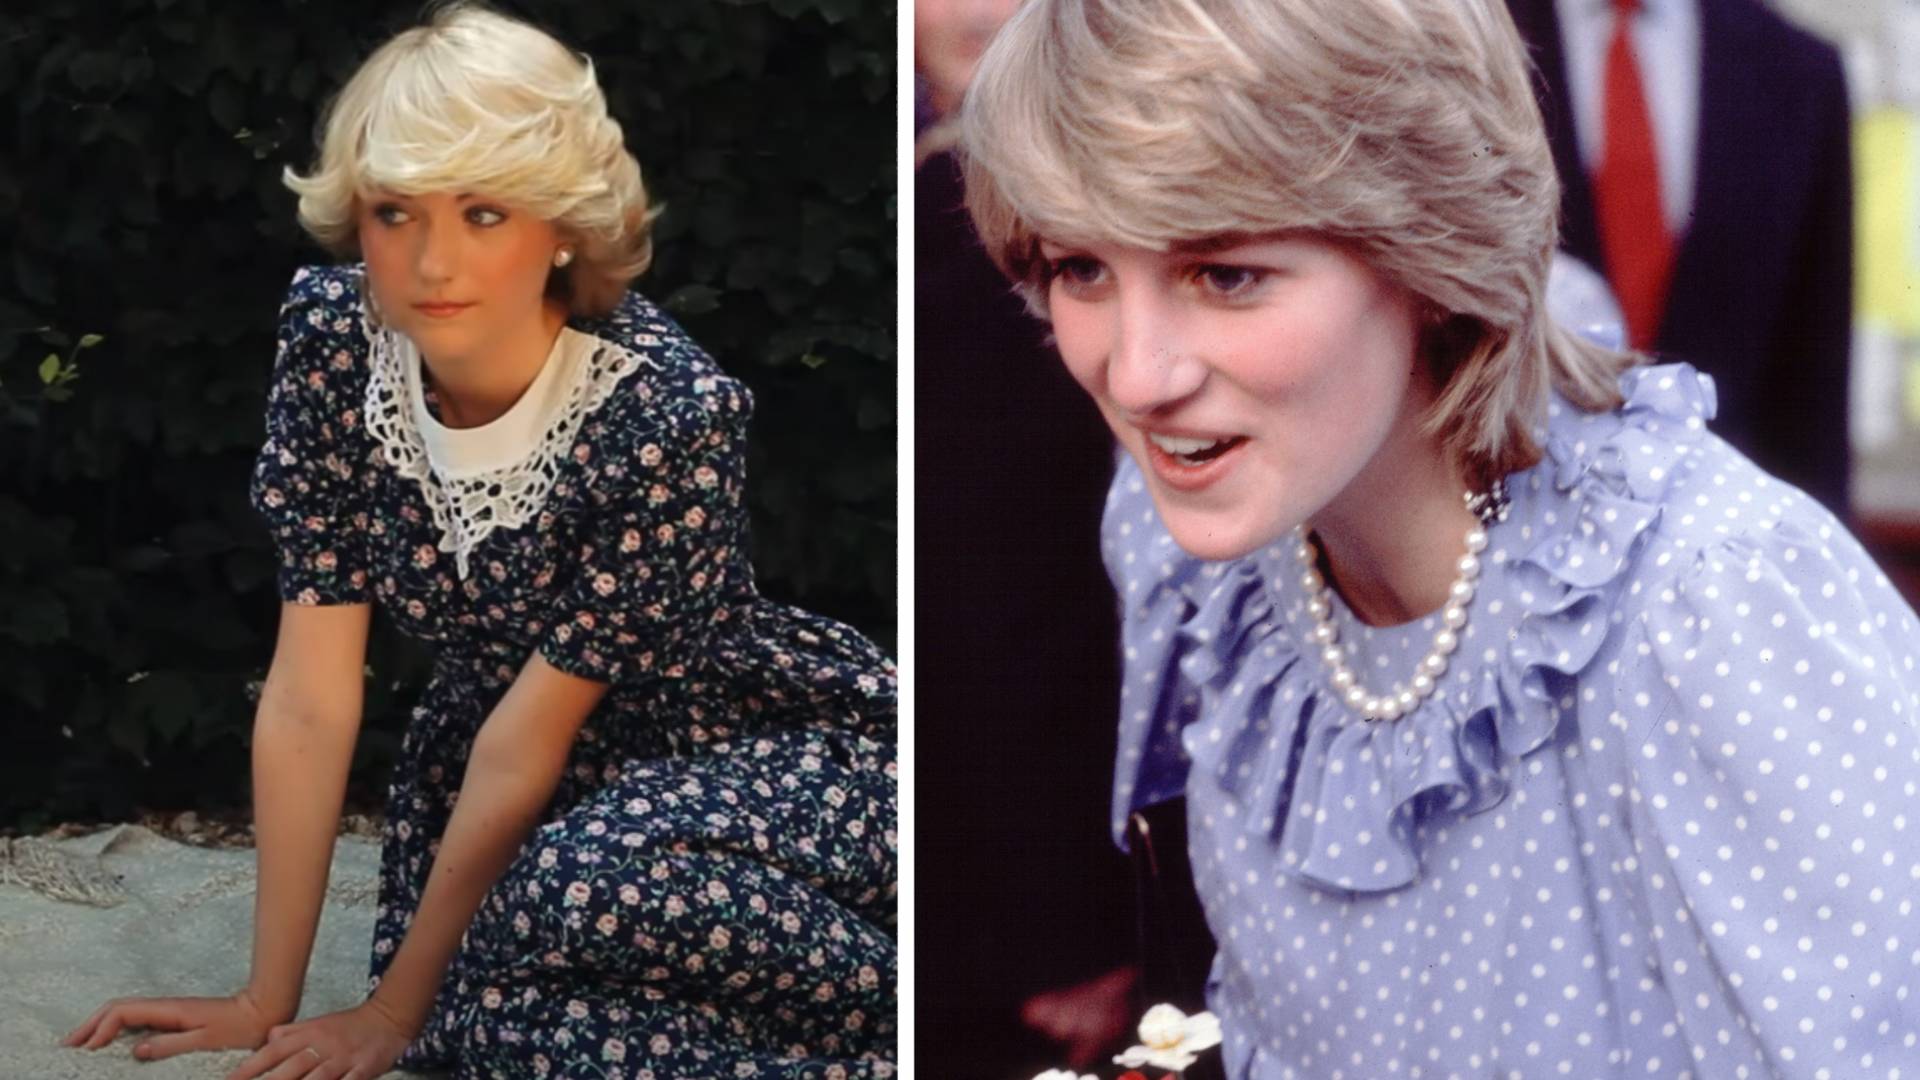 Ta dziewczyna wygląda jak młoda księżna Diana. Podobieństwo jest niesamowite!